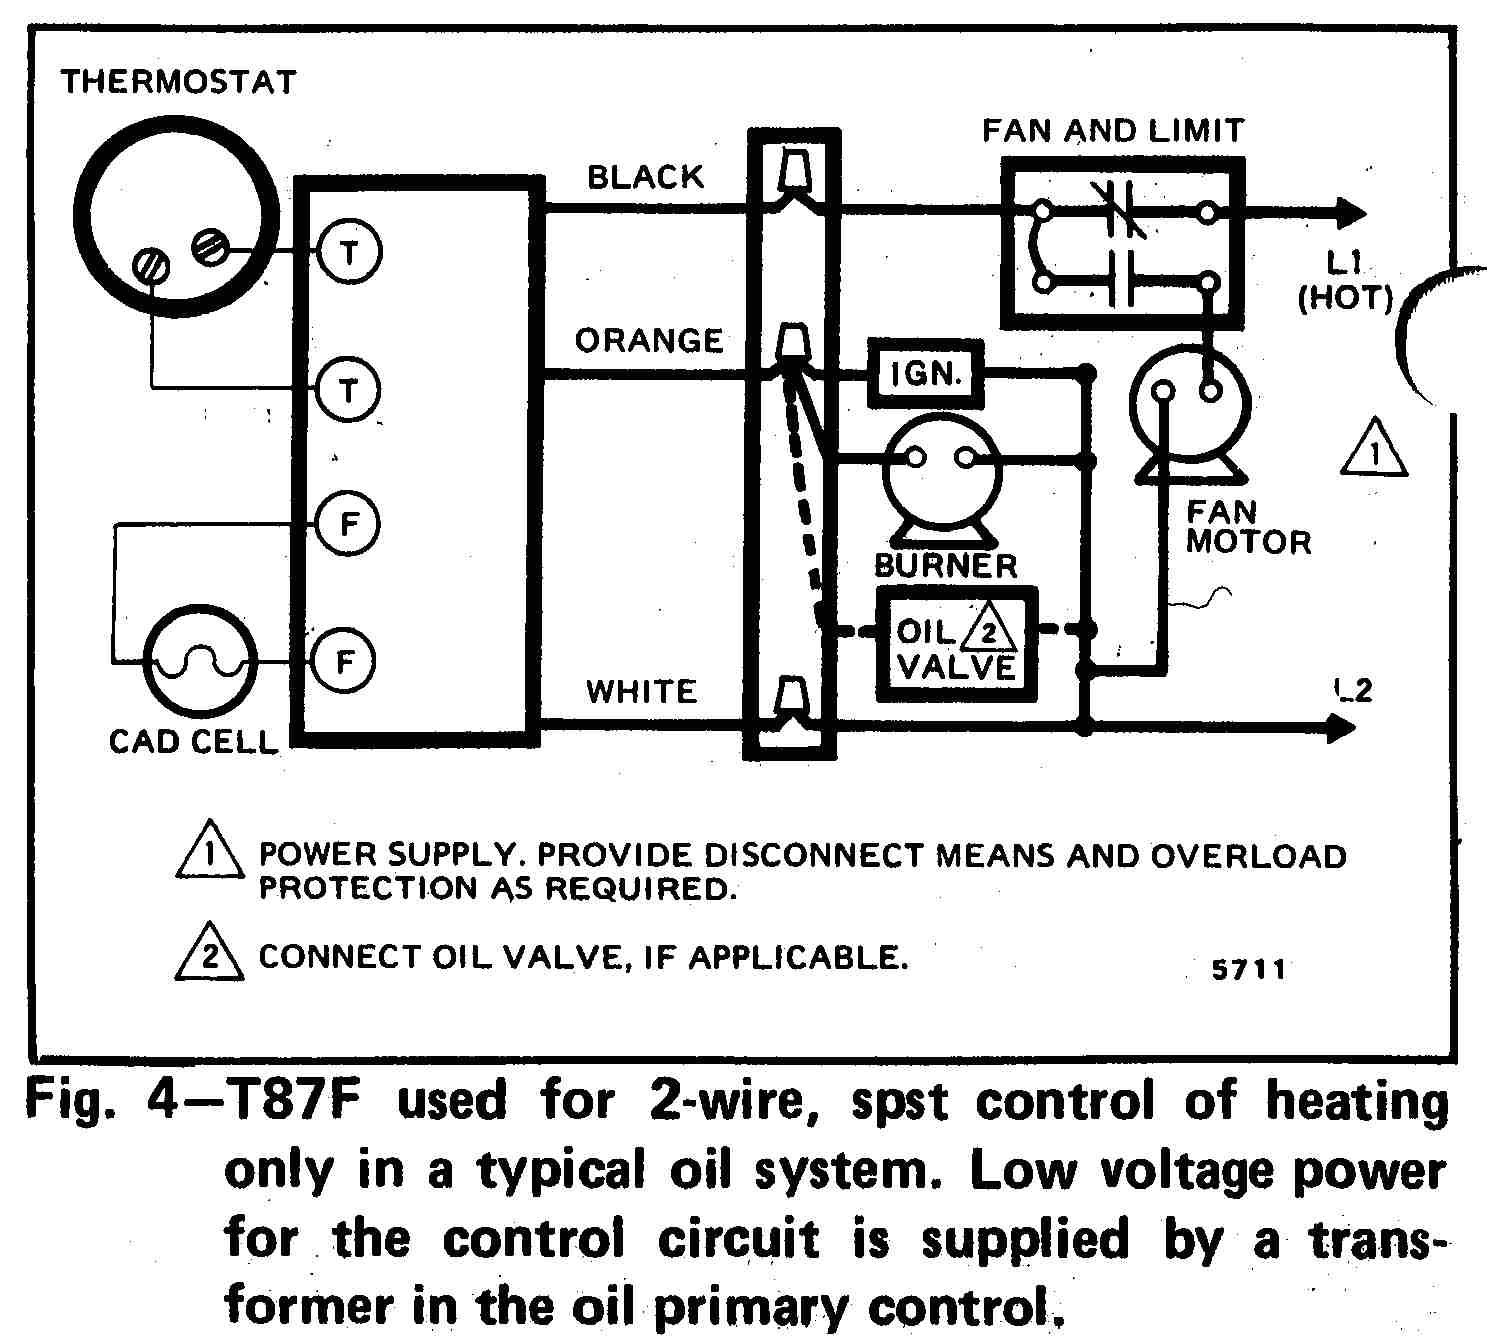 honeywell thermostat schematic